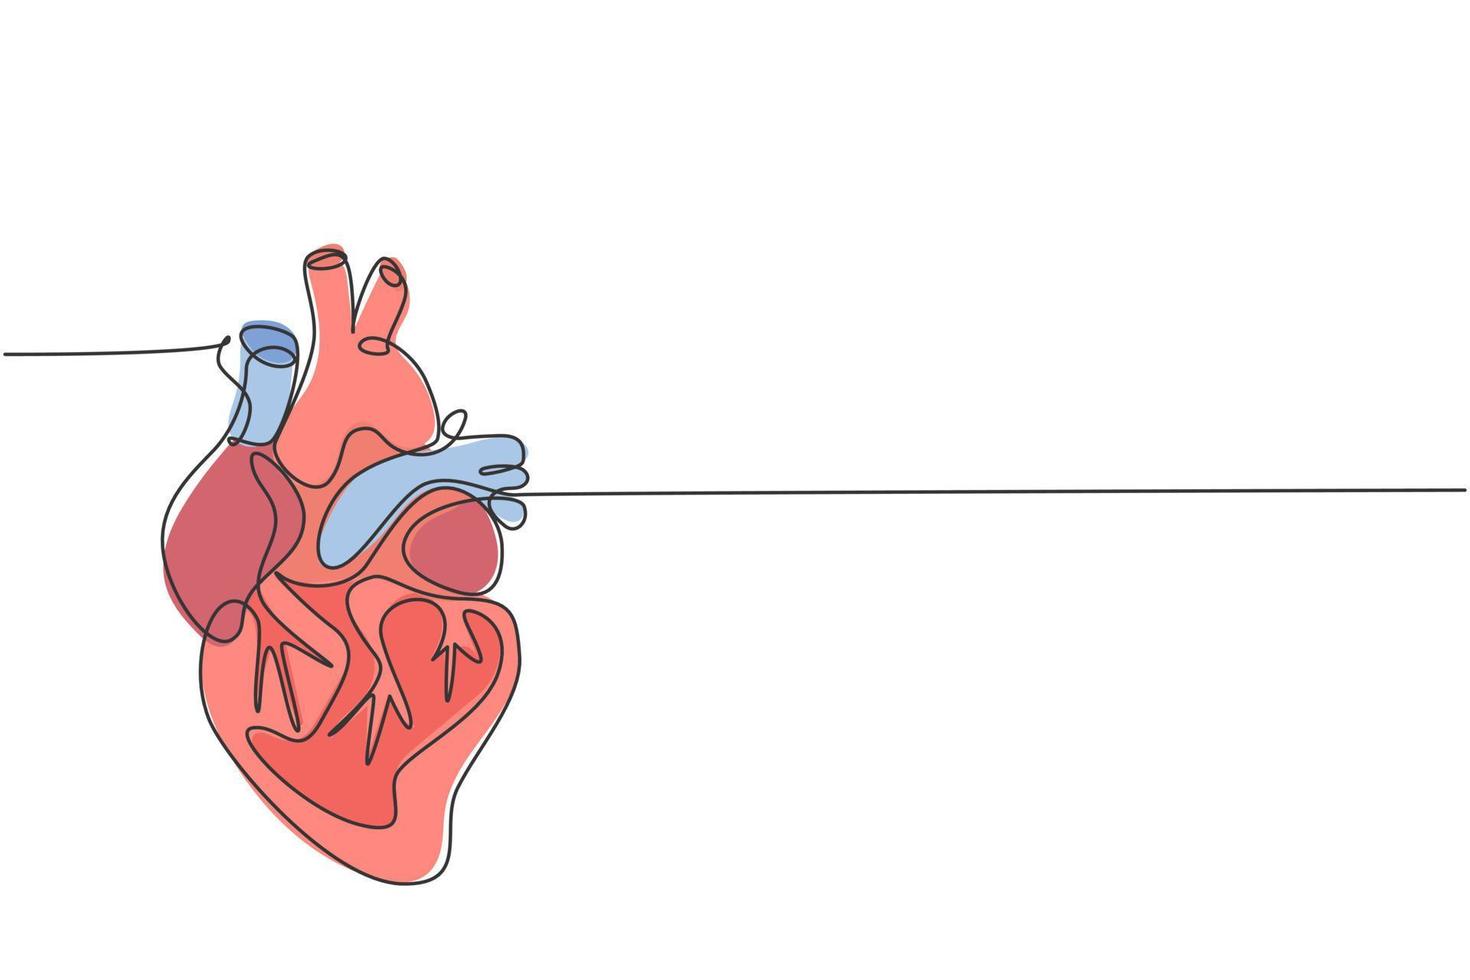 un dessin au trait continu d'un organe cardiaque humain anatomique. concept d'anatomie interne médicale. ligne unique moderne dessiner illustration vectorielle design tendance vecteur